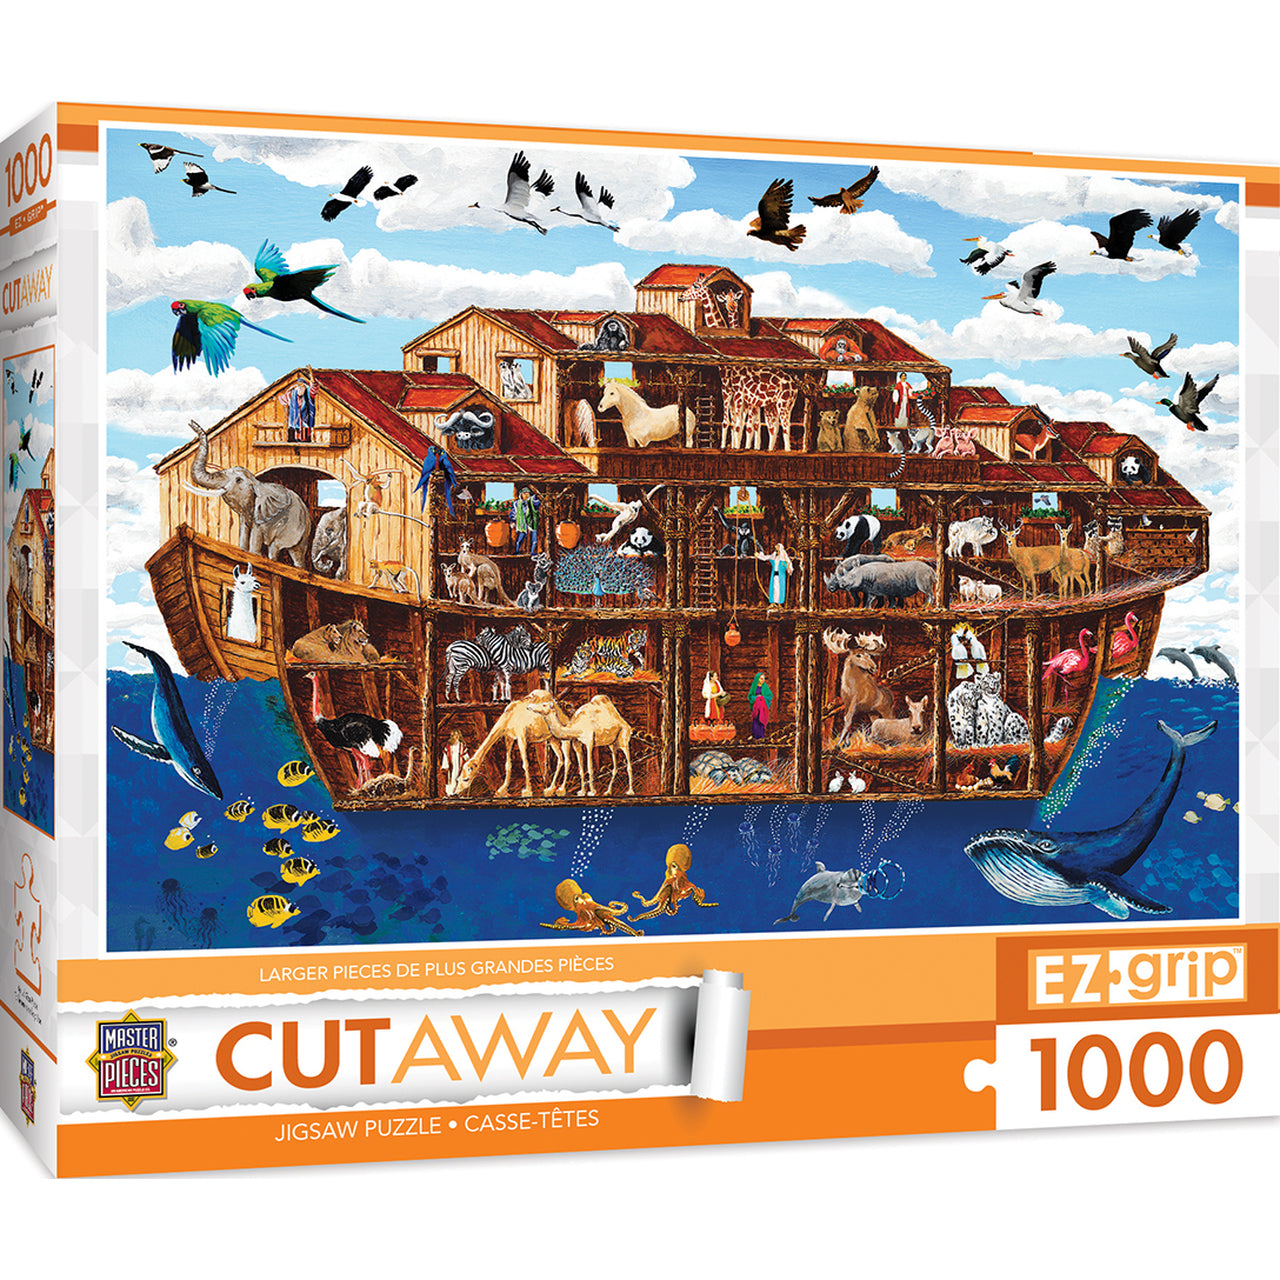 Cut-Aways Noah's Ark EZ Grip Large 1000 Piece Jigsaw Puzzle by Masterpieces